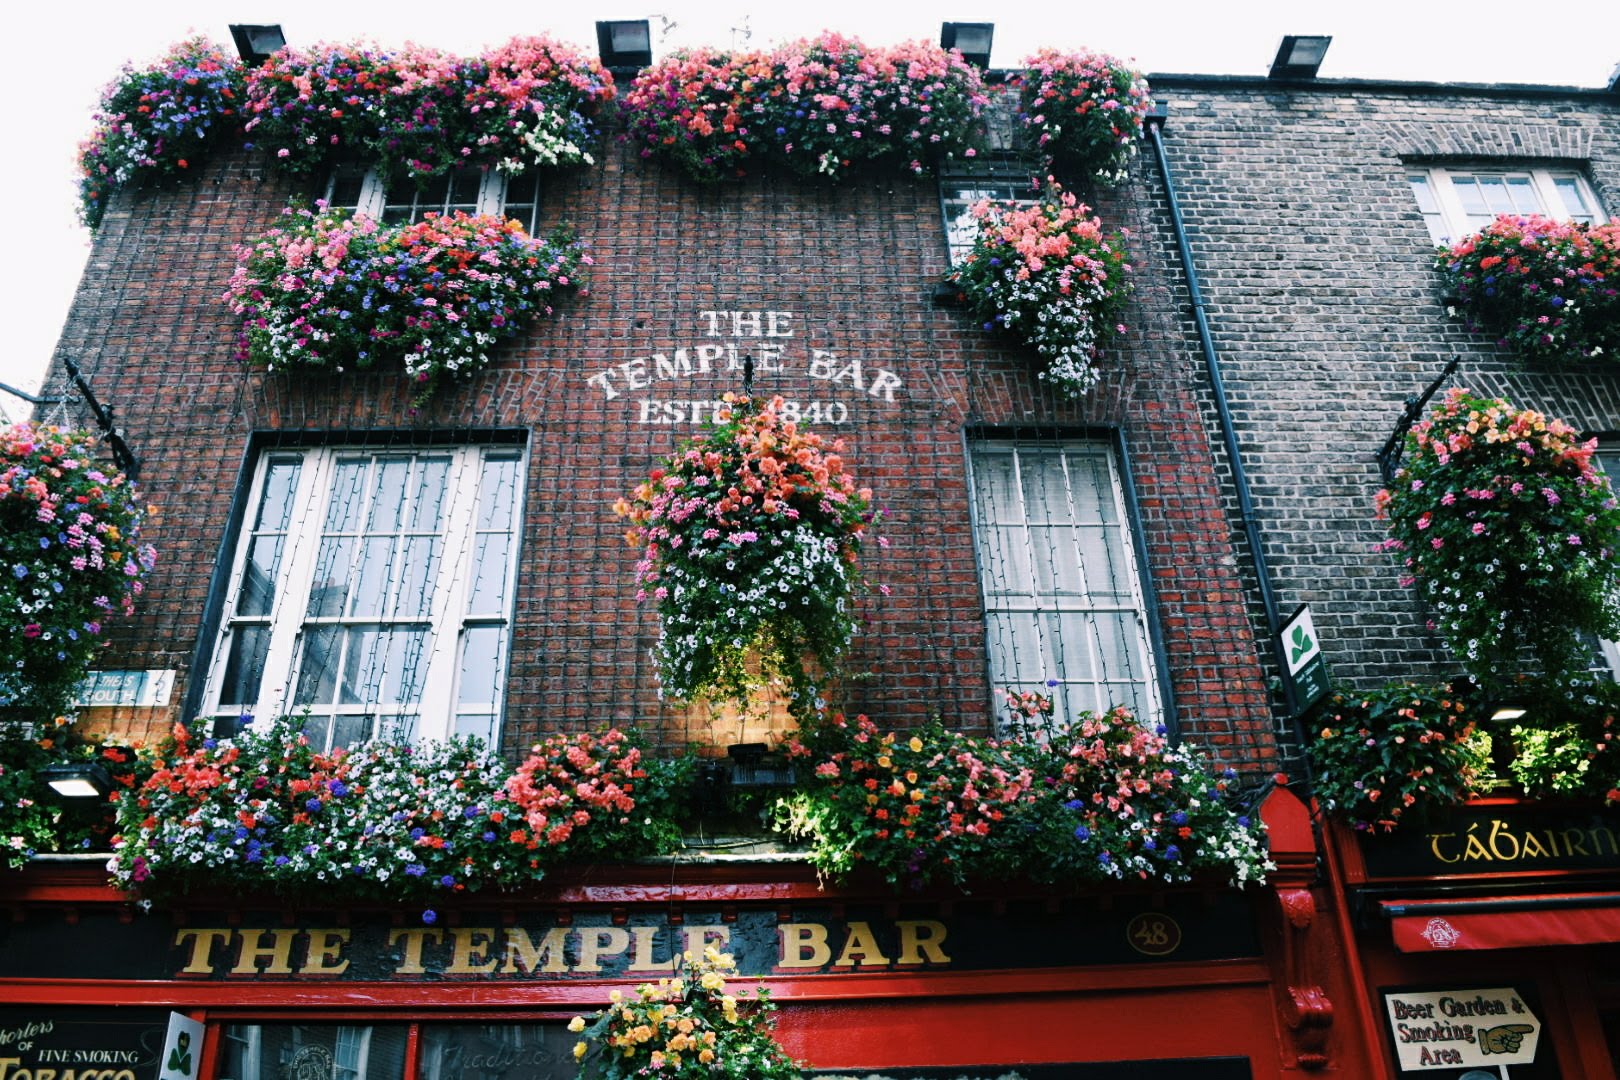 Dublin, Ireland – Travel and Trinity